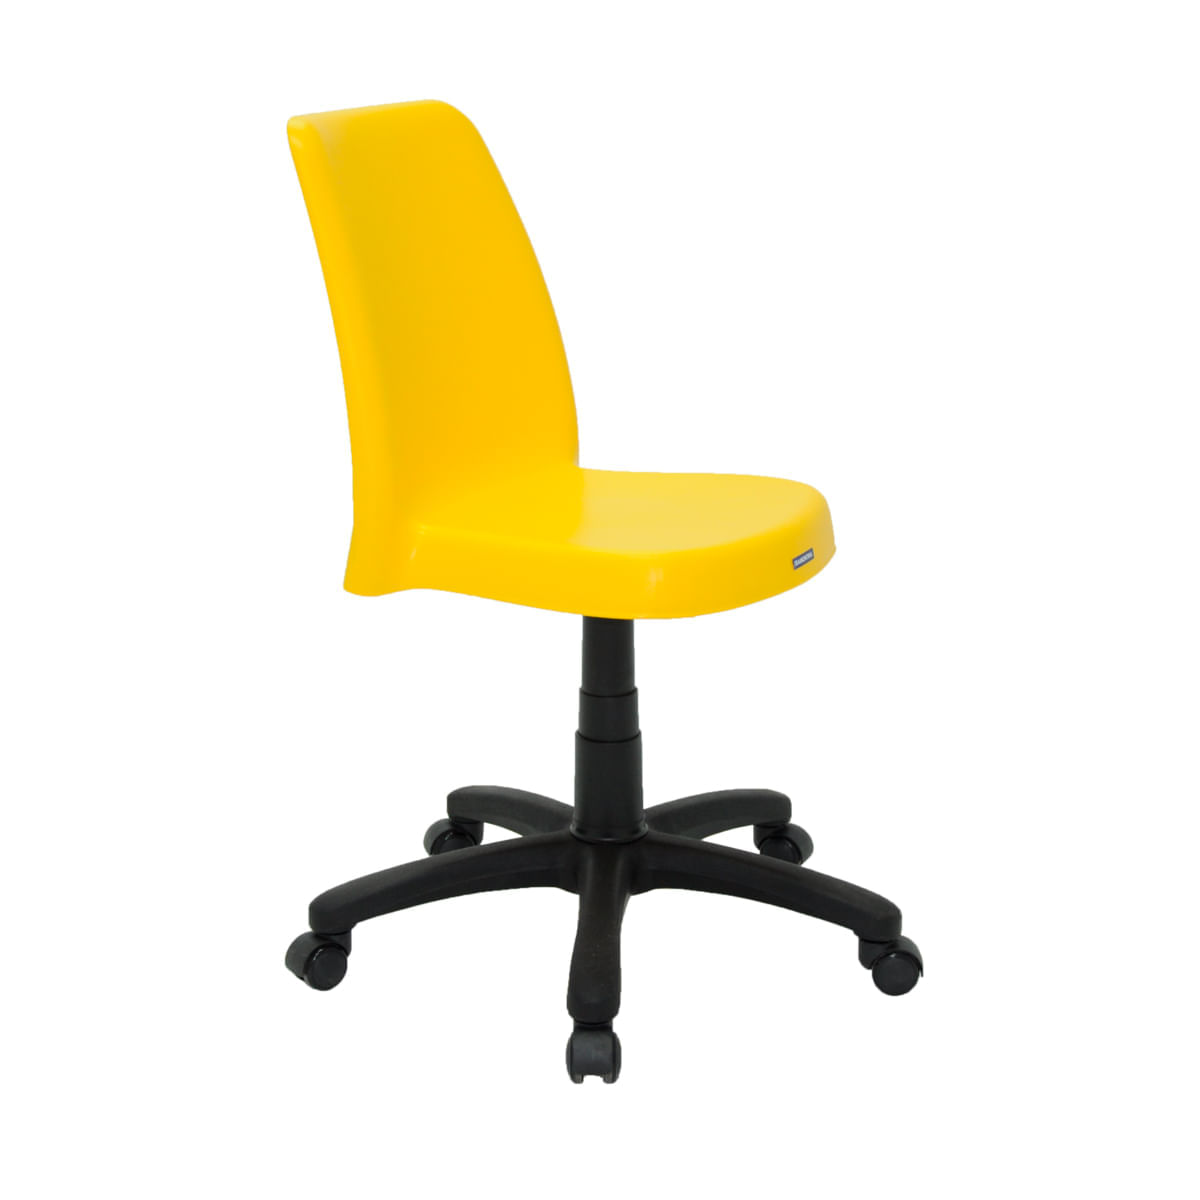 Cadeira Tramontina Vanda em Polipropileno Amarelo com Base Rodízio